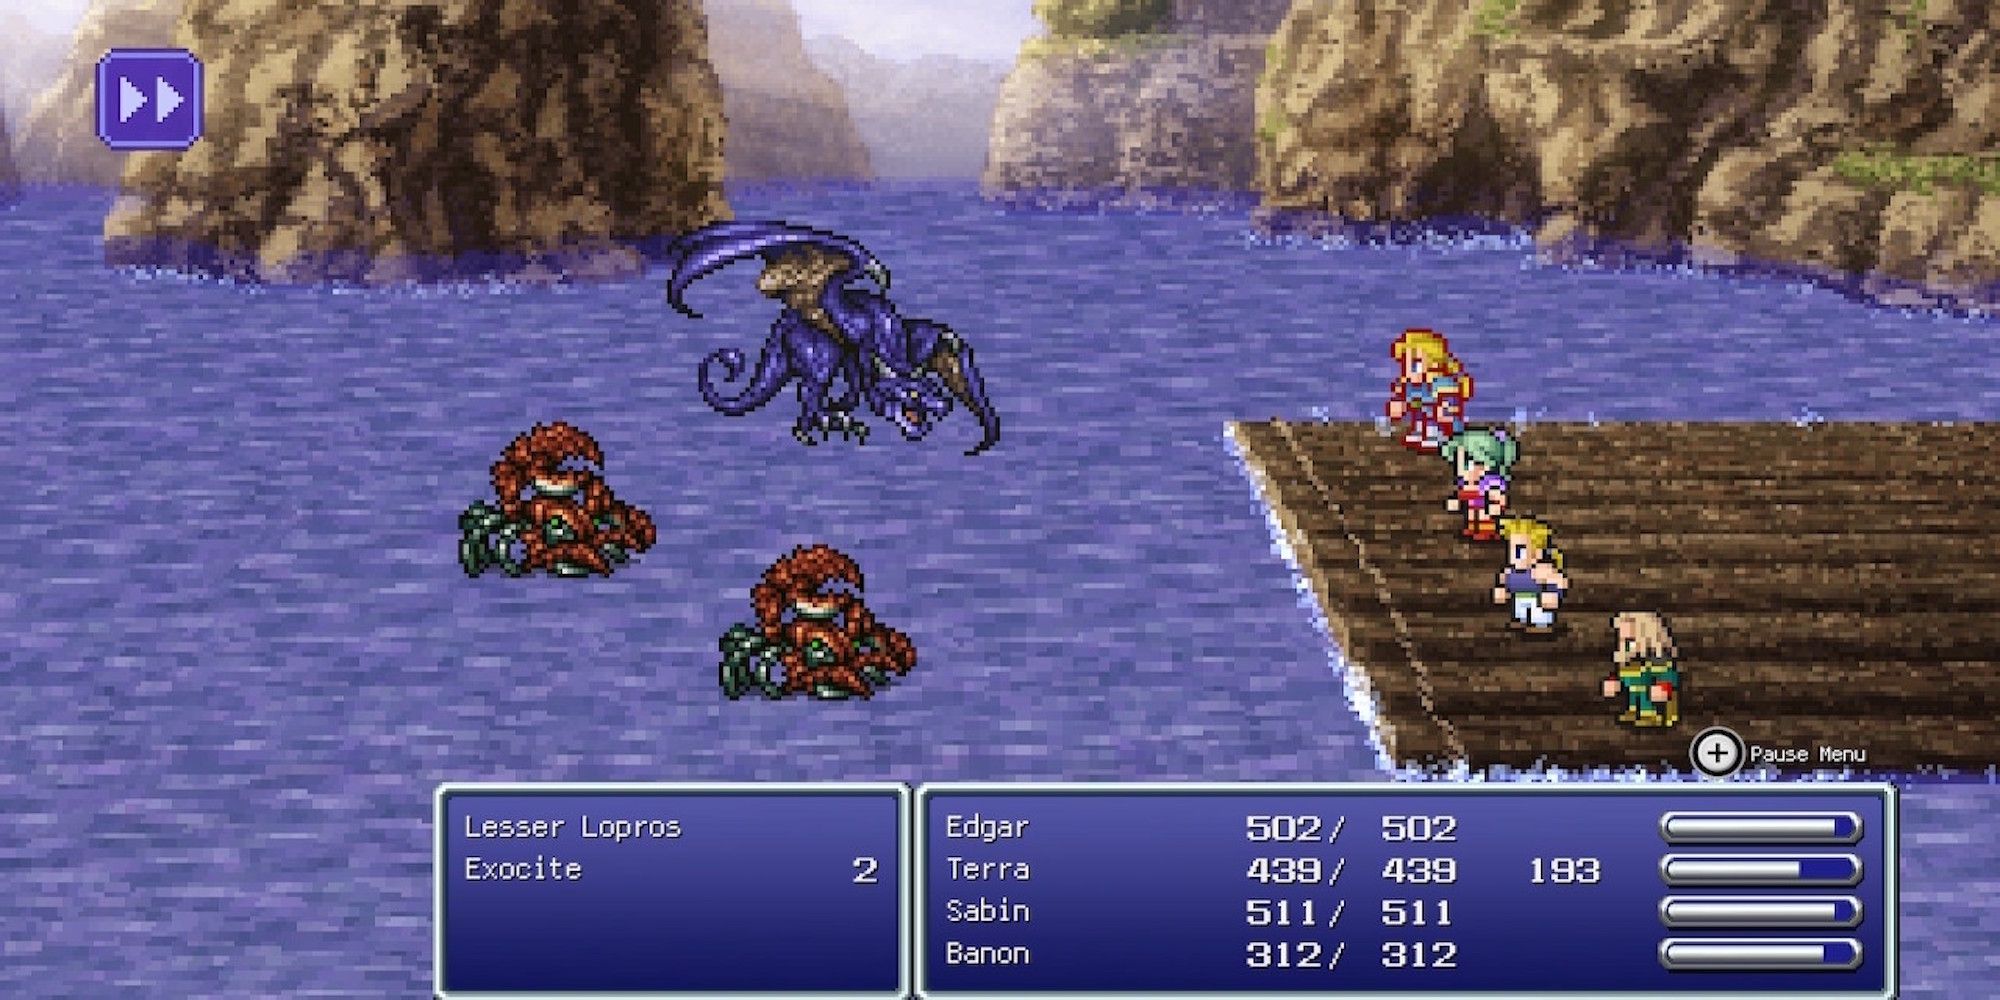 Fighting a battle in Final Fantasy 6